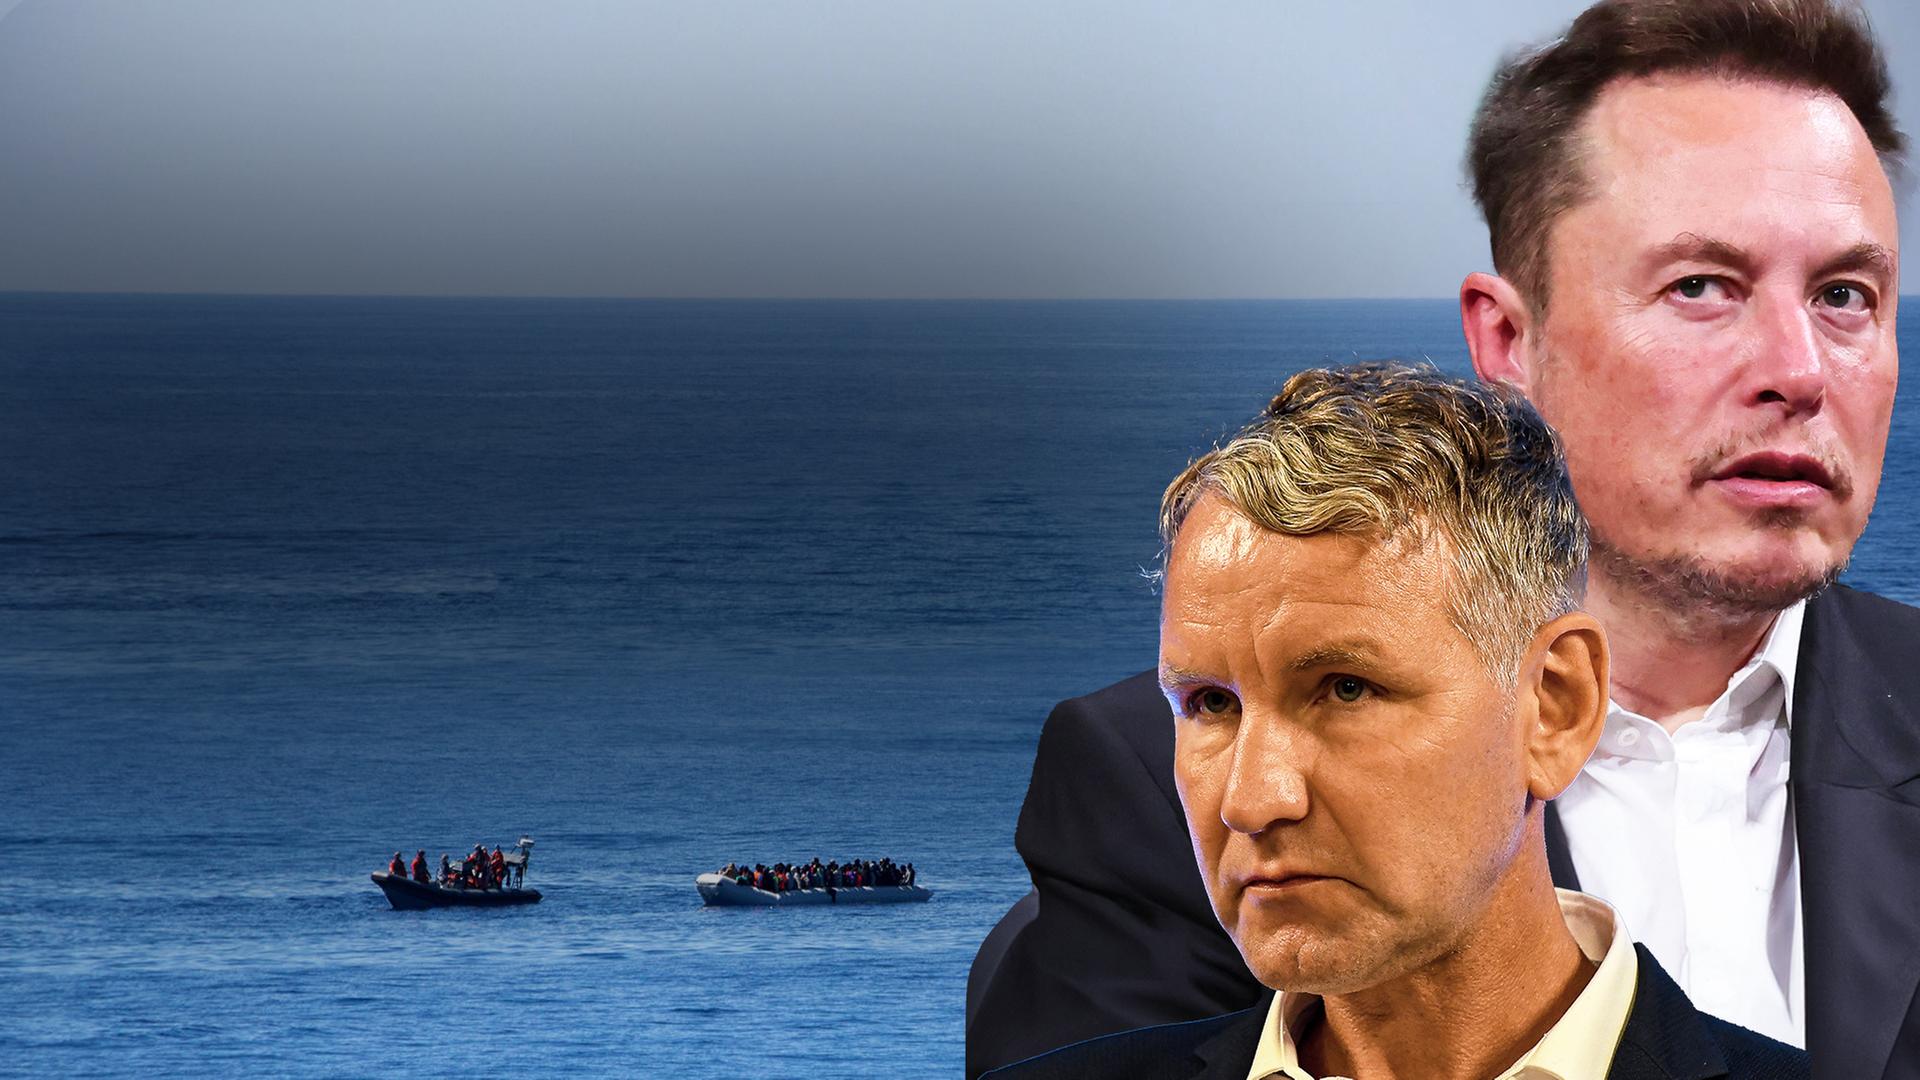 Bjoern Hoecke und Elon Musk rechts im Bild, Flüchtlingsboote auf dem Meer im Hintergrund